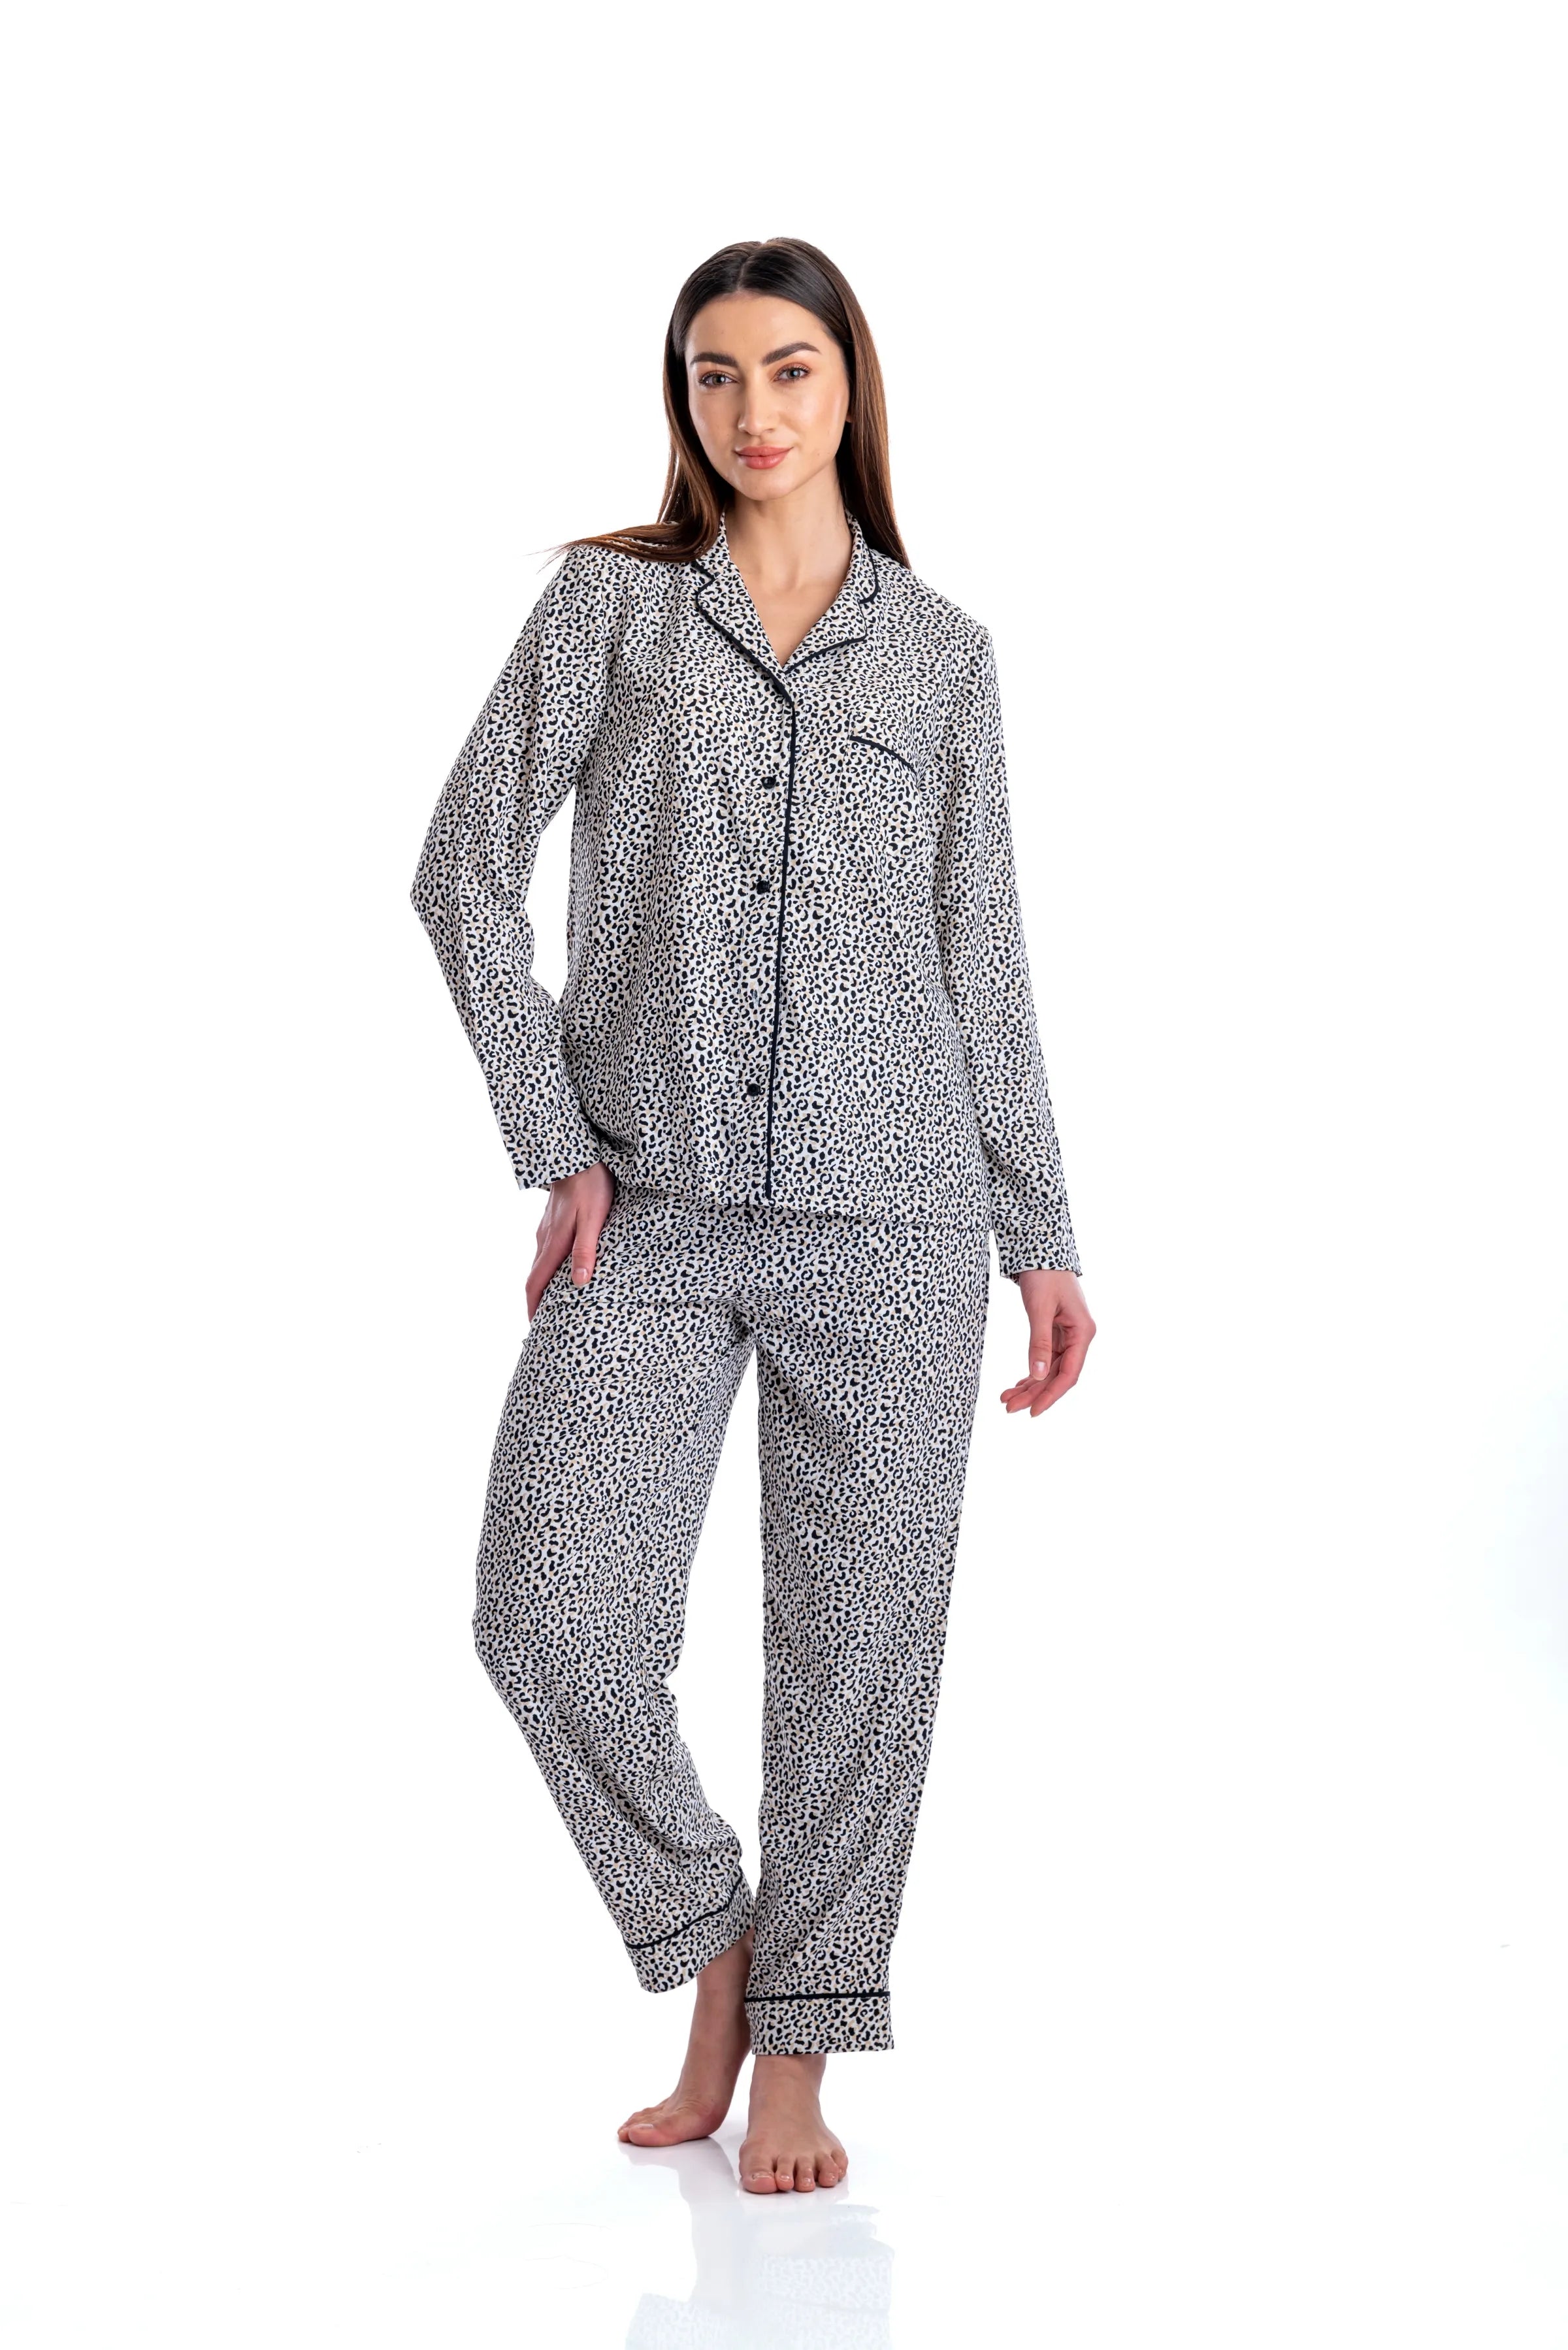 nightwear, payjama, payjamas, payjama set, women payjama set, comfortable nightwears, payjama and shirt, women fashion, comfortable nightsuit